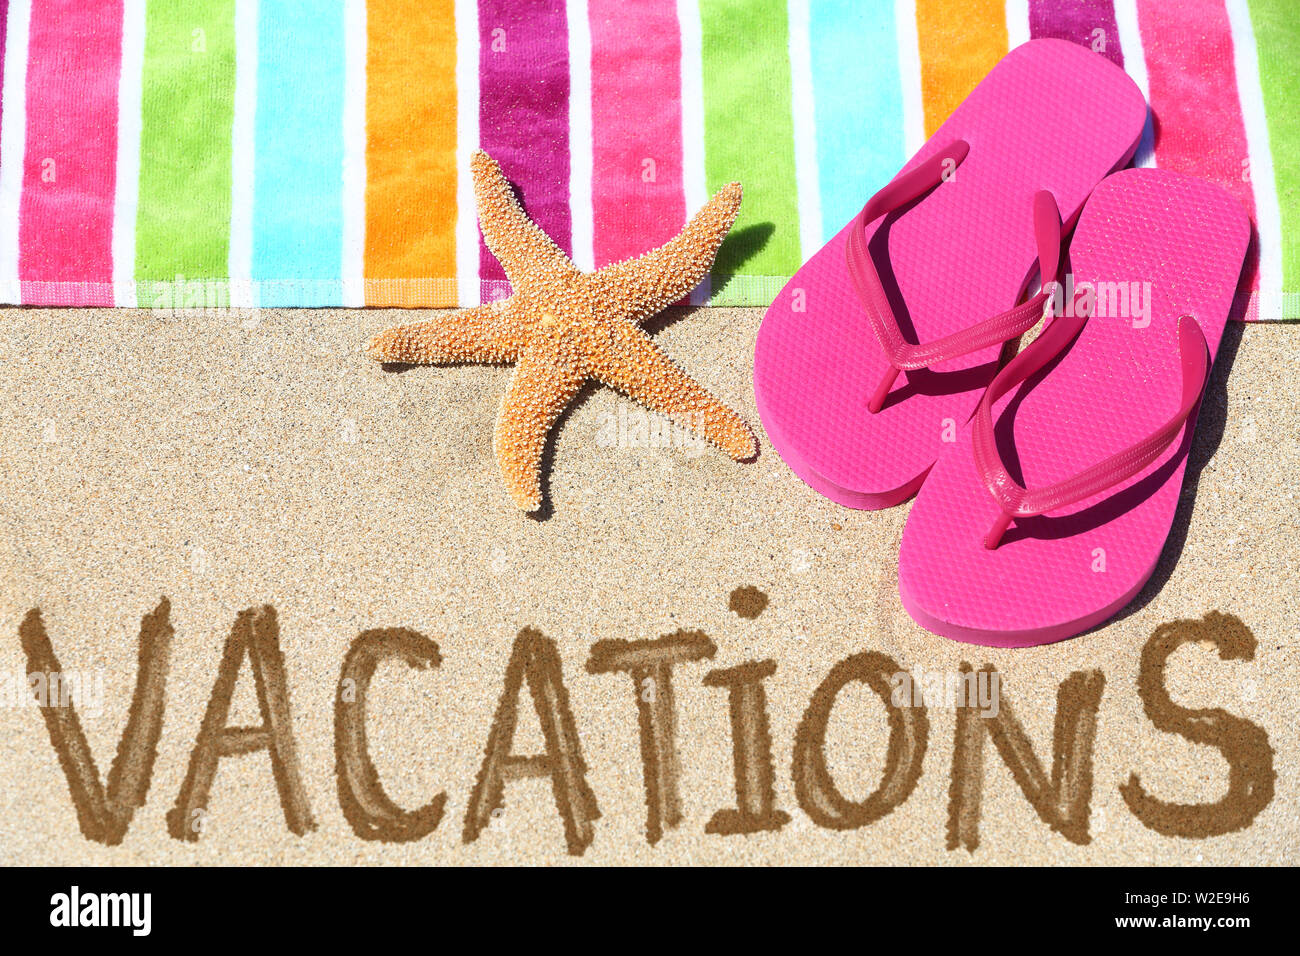 Ferienhäuser Strand reisen text Konzept. Ferien in Sand geschrieben mit Wasser neben Strandtuch, Sommer Sandalen und Seesterne. Sommer und Sonne Urlaub Ferien. Stockfoto